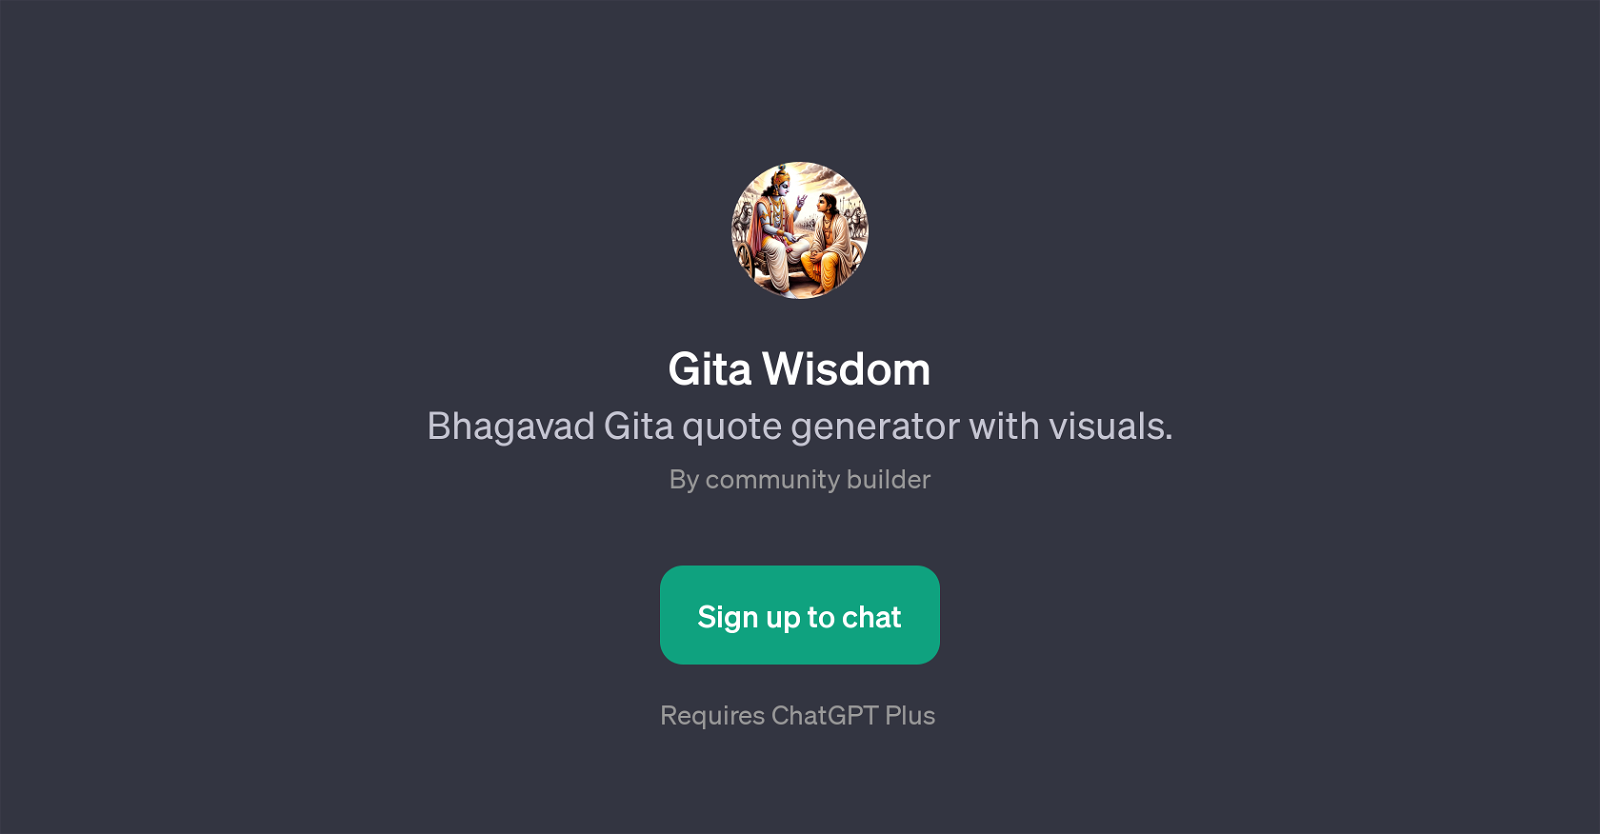 Gita Wisdom website